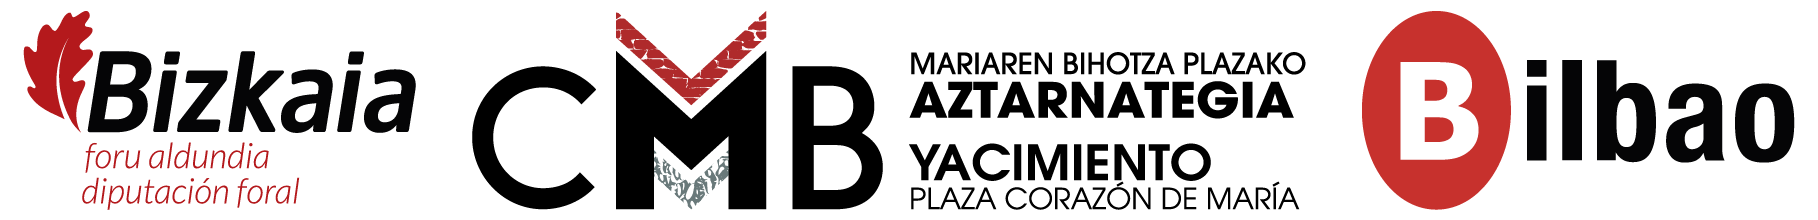 Mariaren Bihotza Plazako Aztarnategia